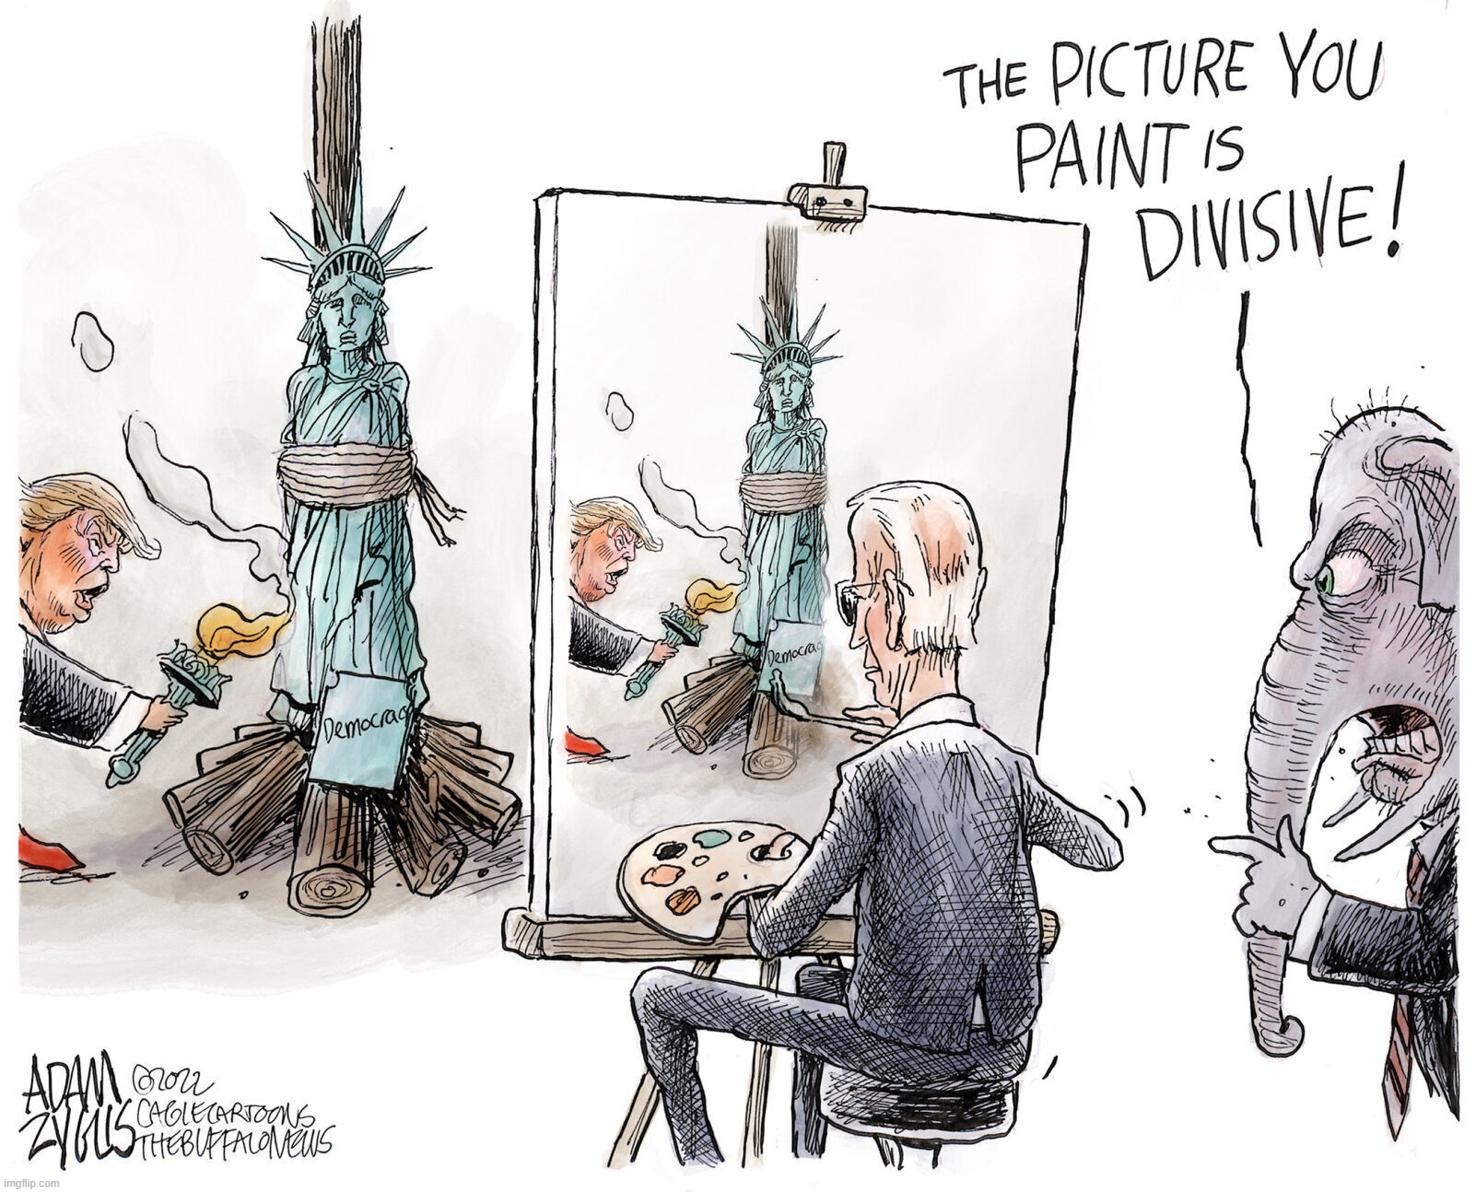 Joe Biden paints a divisive picture | image tagged in joe biden paints a divisive picture | made w/ Imgflip meme maker